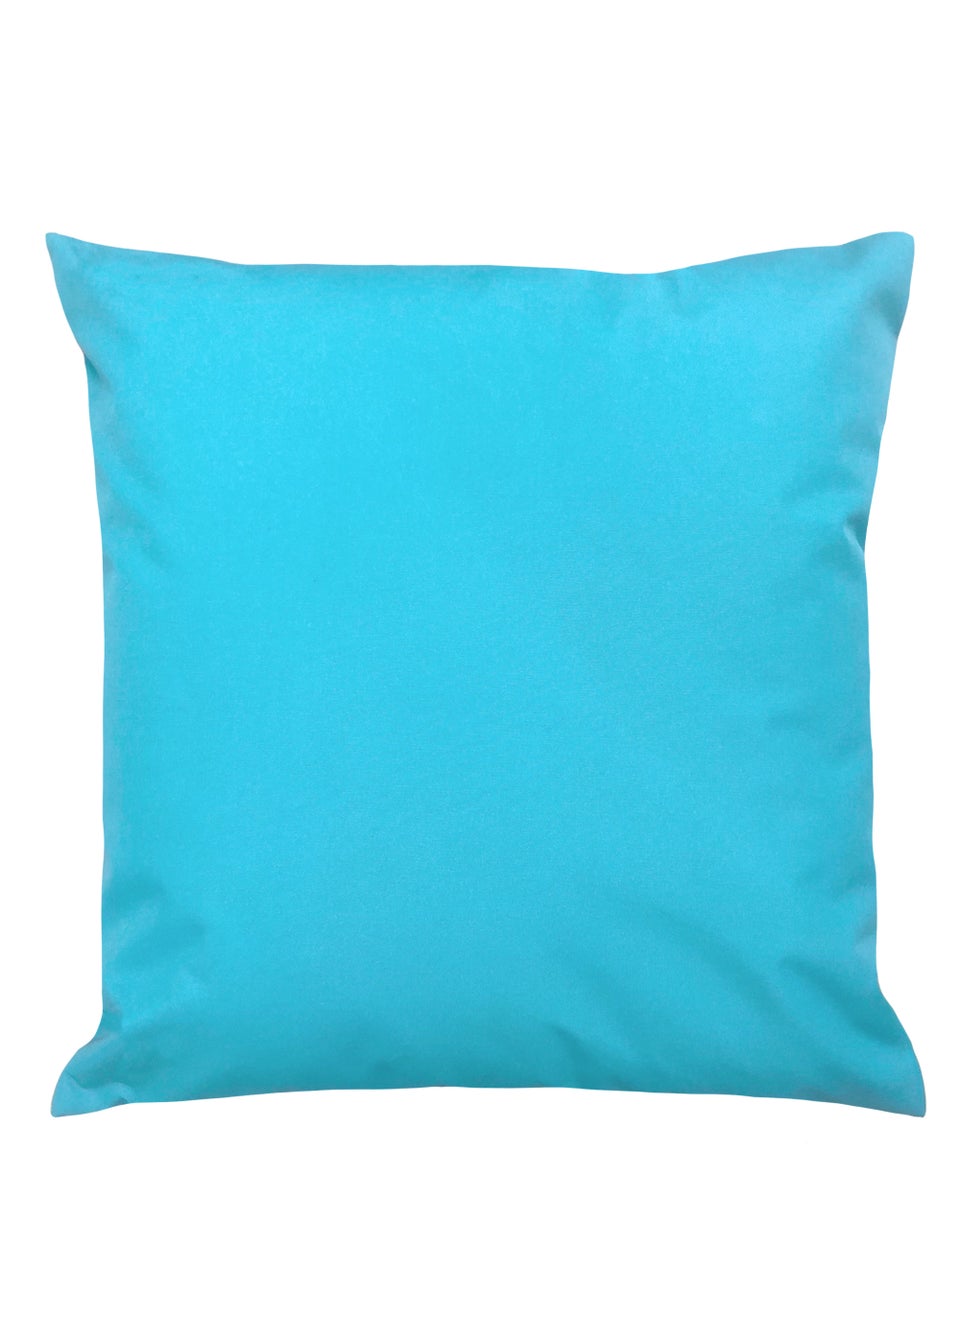 furn. Ibiza Outdoor Filled Cushion (43cm x 43cm x 8cm)